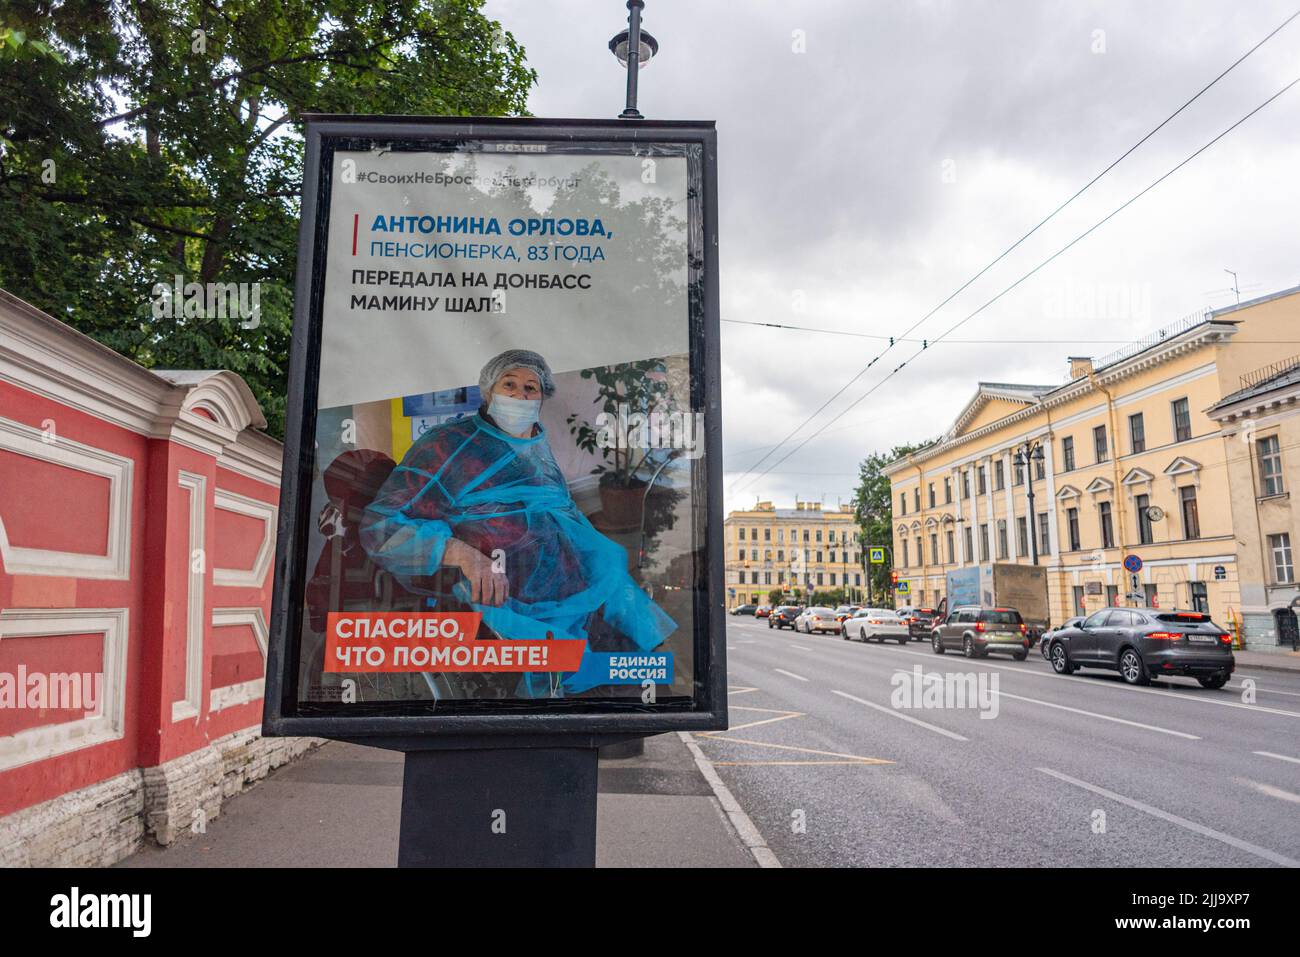 Saint-Pétersbourg, Russie - 9 juillet 2022 : affiche pro-guerre montrant une vieille dame russe qui aurait aidé Donbass. La propagande de l'État russe en faveur de la guerre. Banque D'Images